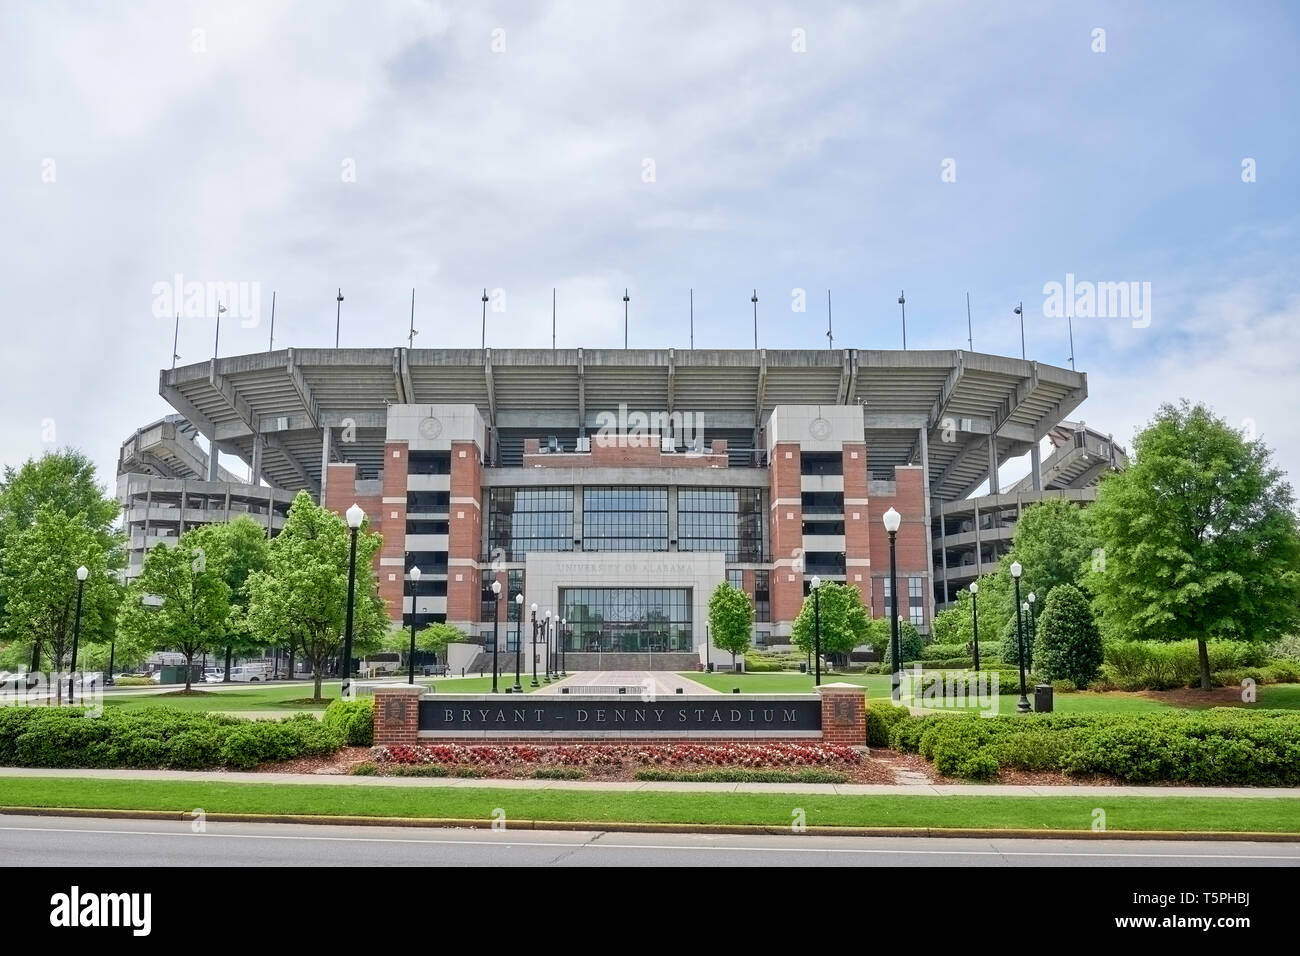 Entrée extérieure avant de Bryant - Denny Stadium, le stade de football, pour l'Université d'Alabama à Tuscaloosa Alabama, Etats-Unis. Banque D'Images